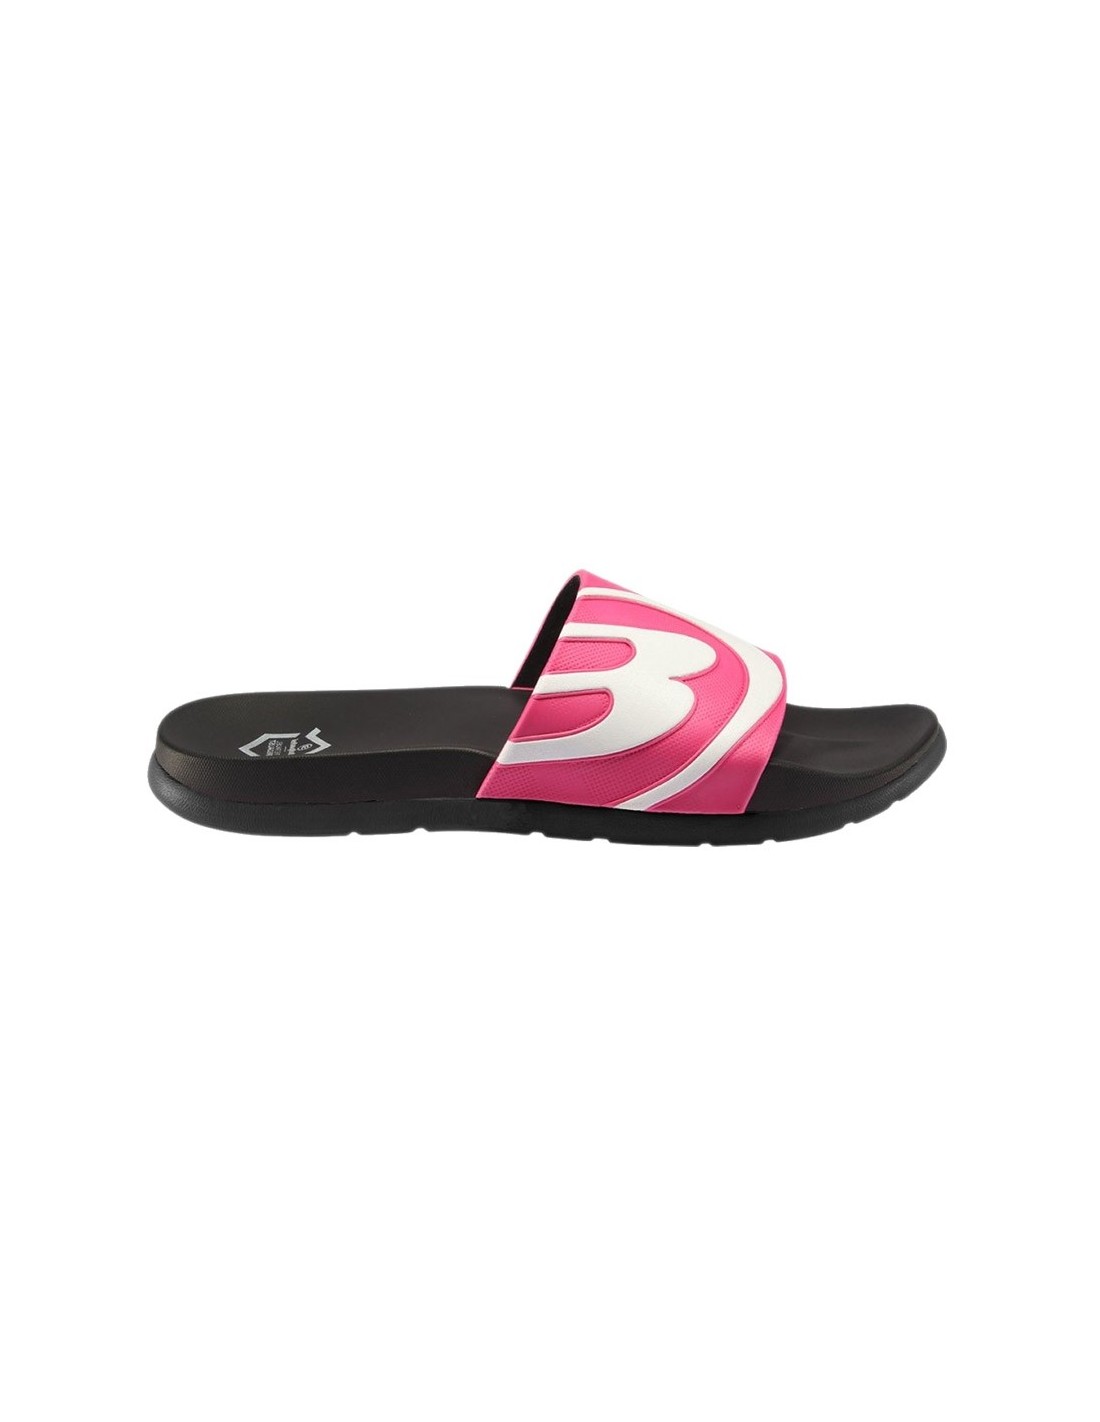 Bullpadel Pink Sandal | Padel accessories | Time2Padel